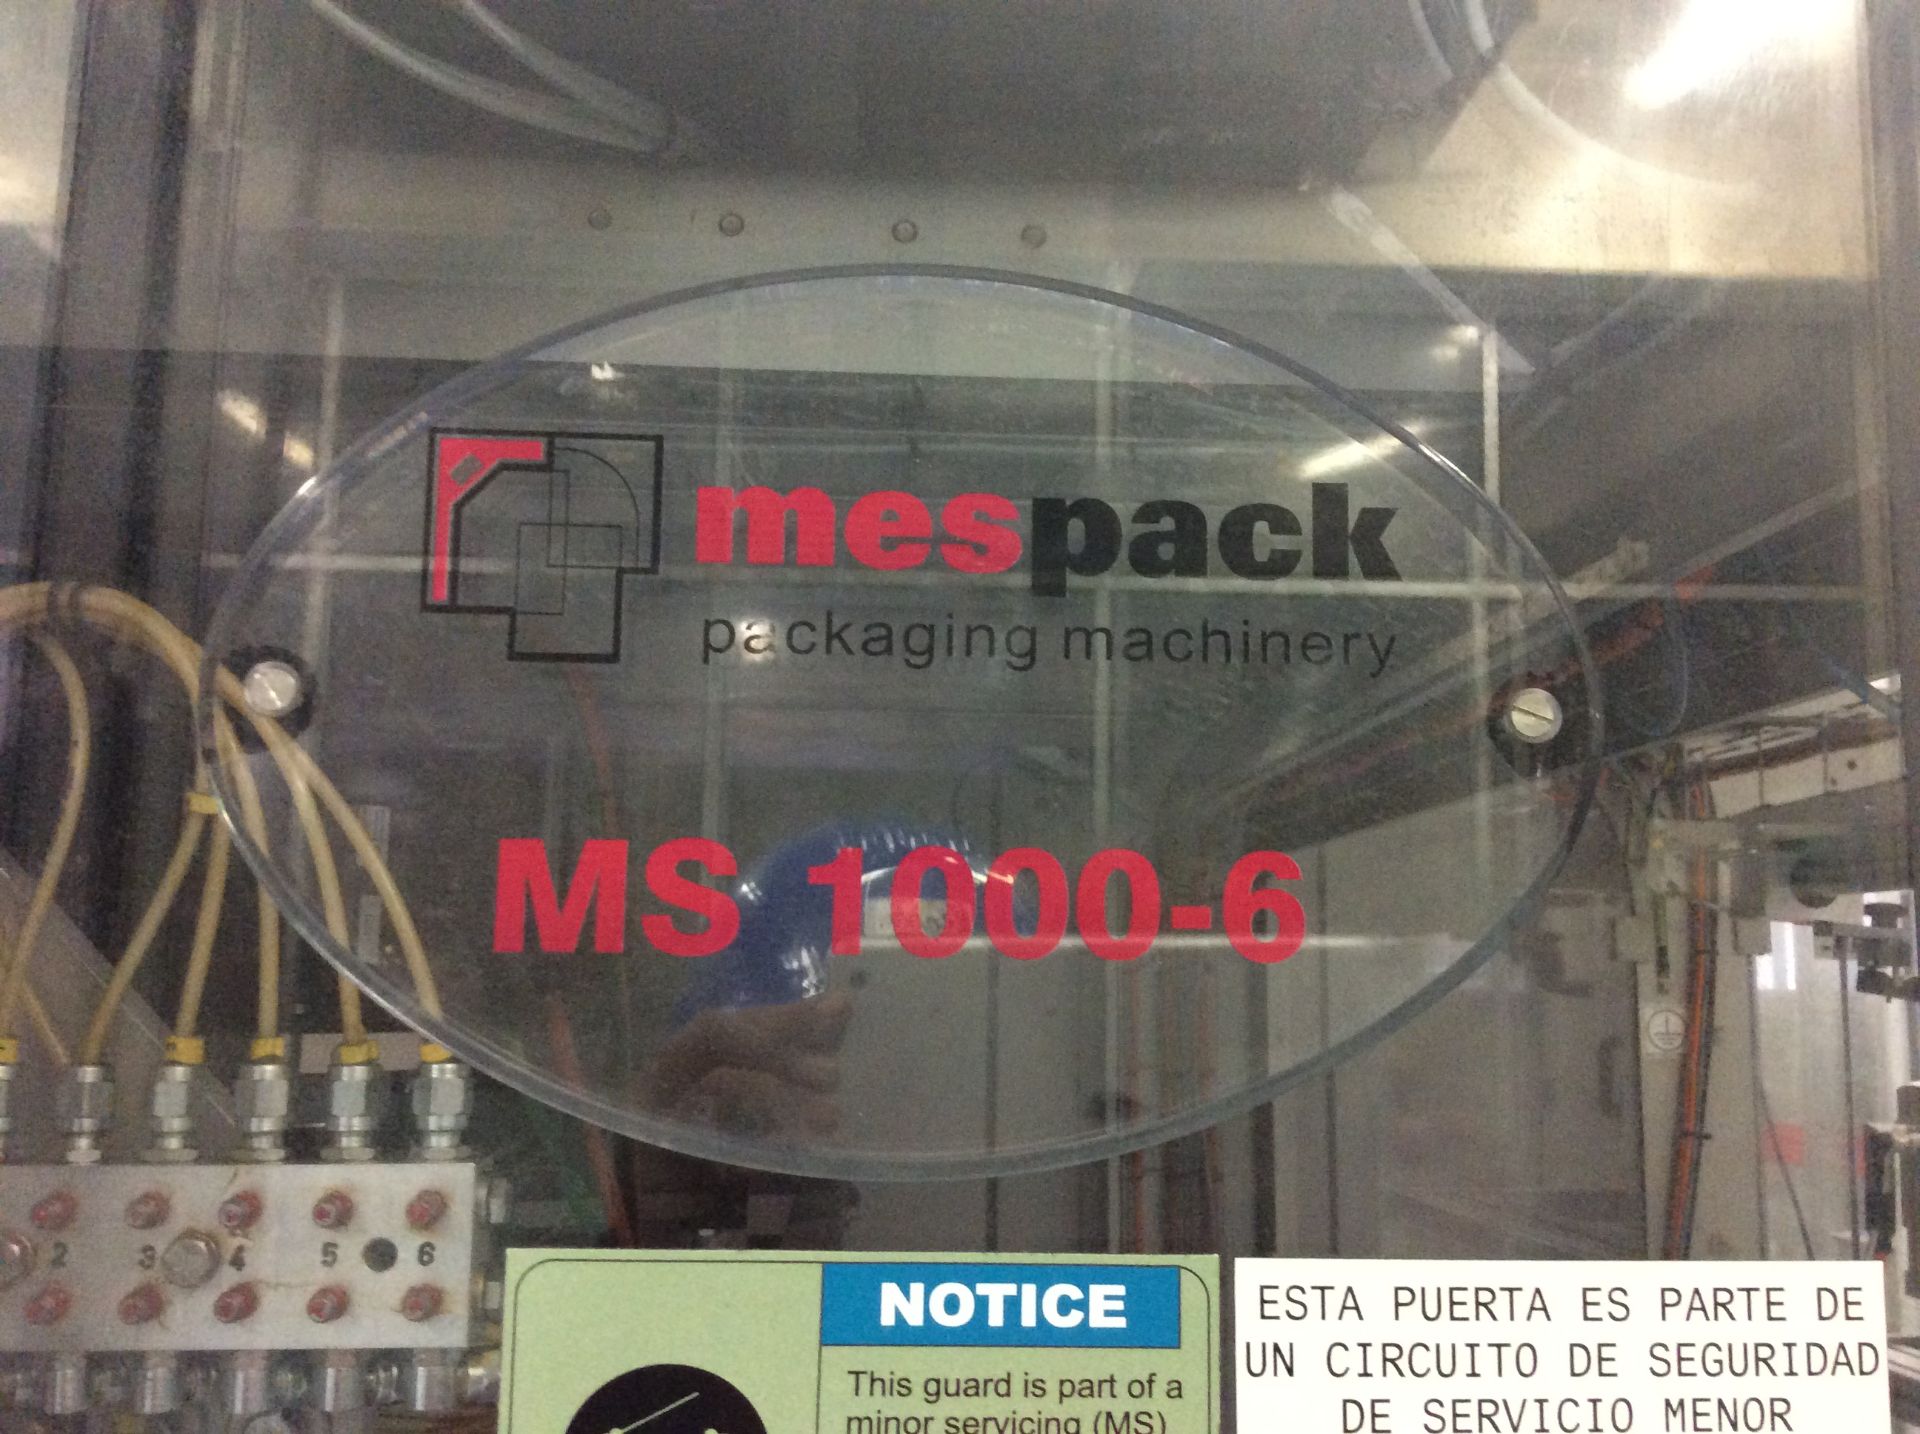 Llenadora Marca MESPACK Mod. M-1000 6 serie 031.010, 27 Kw, con 6 cabezales, capacid - Image 22 of 26